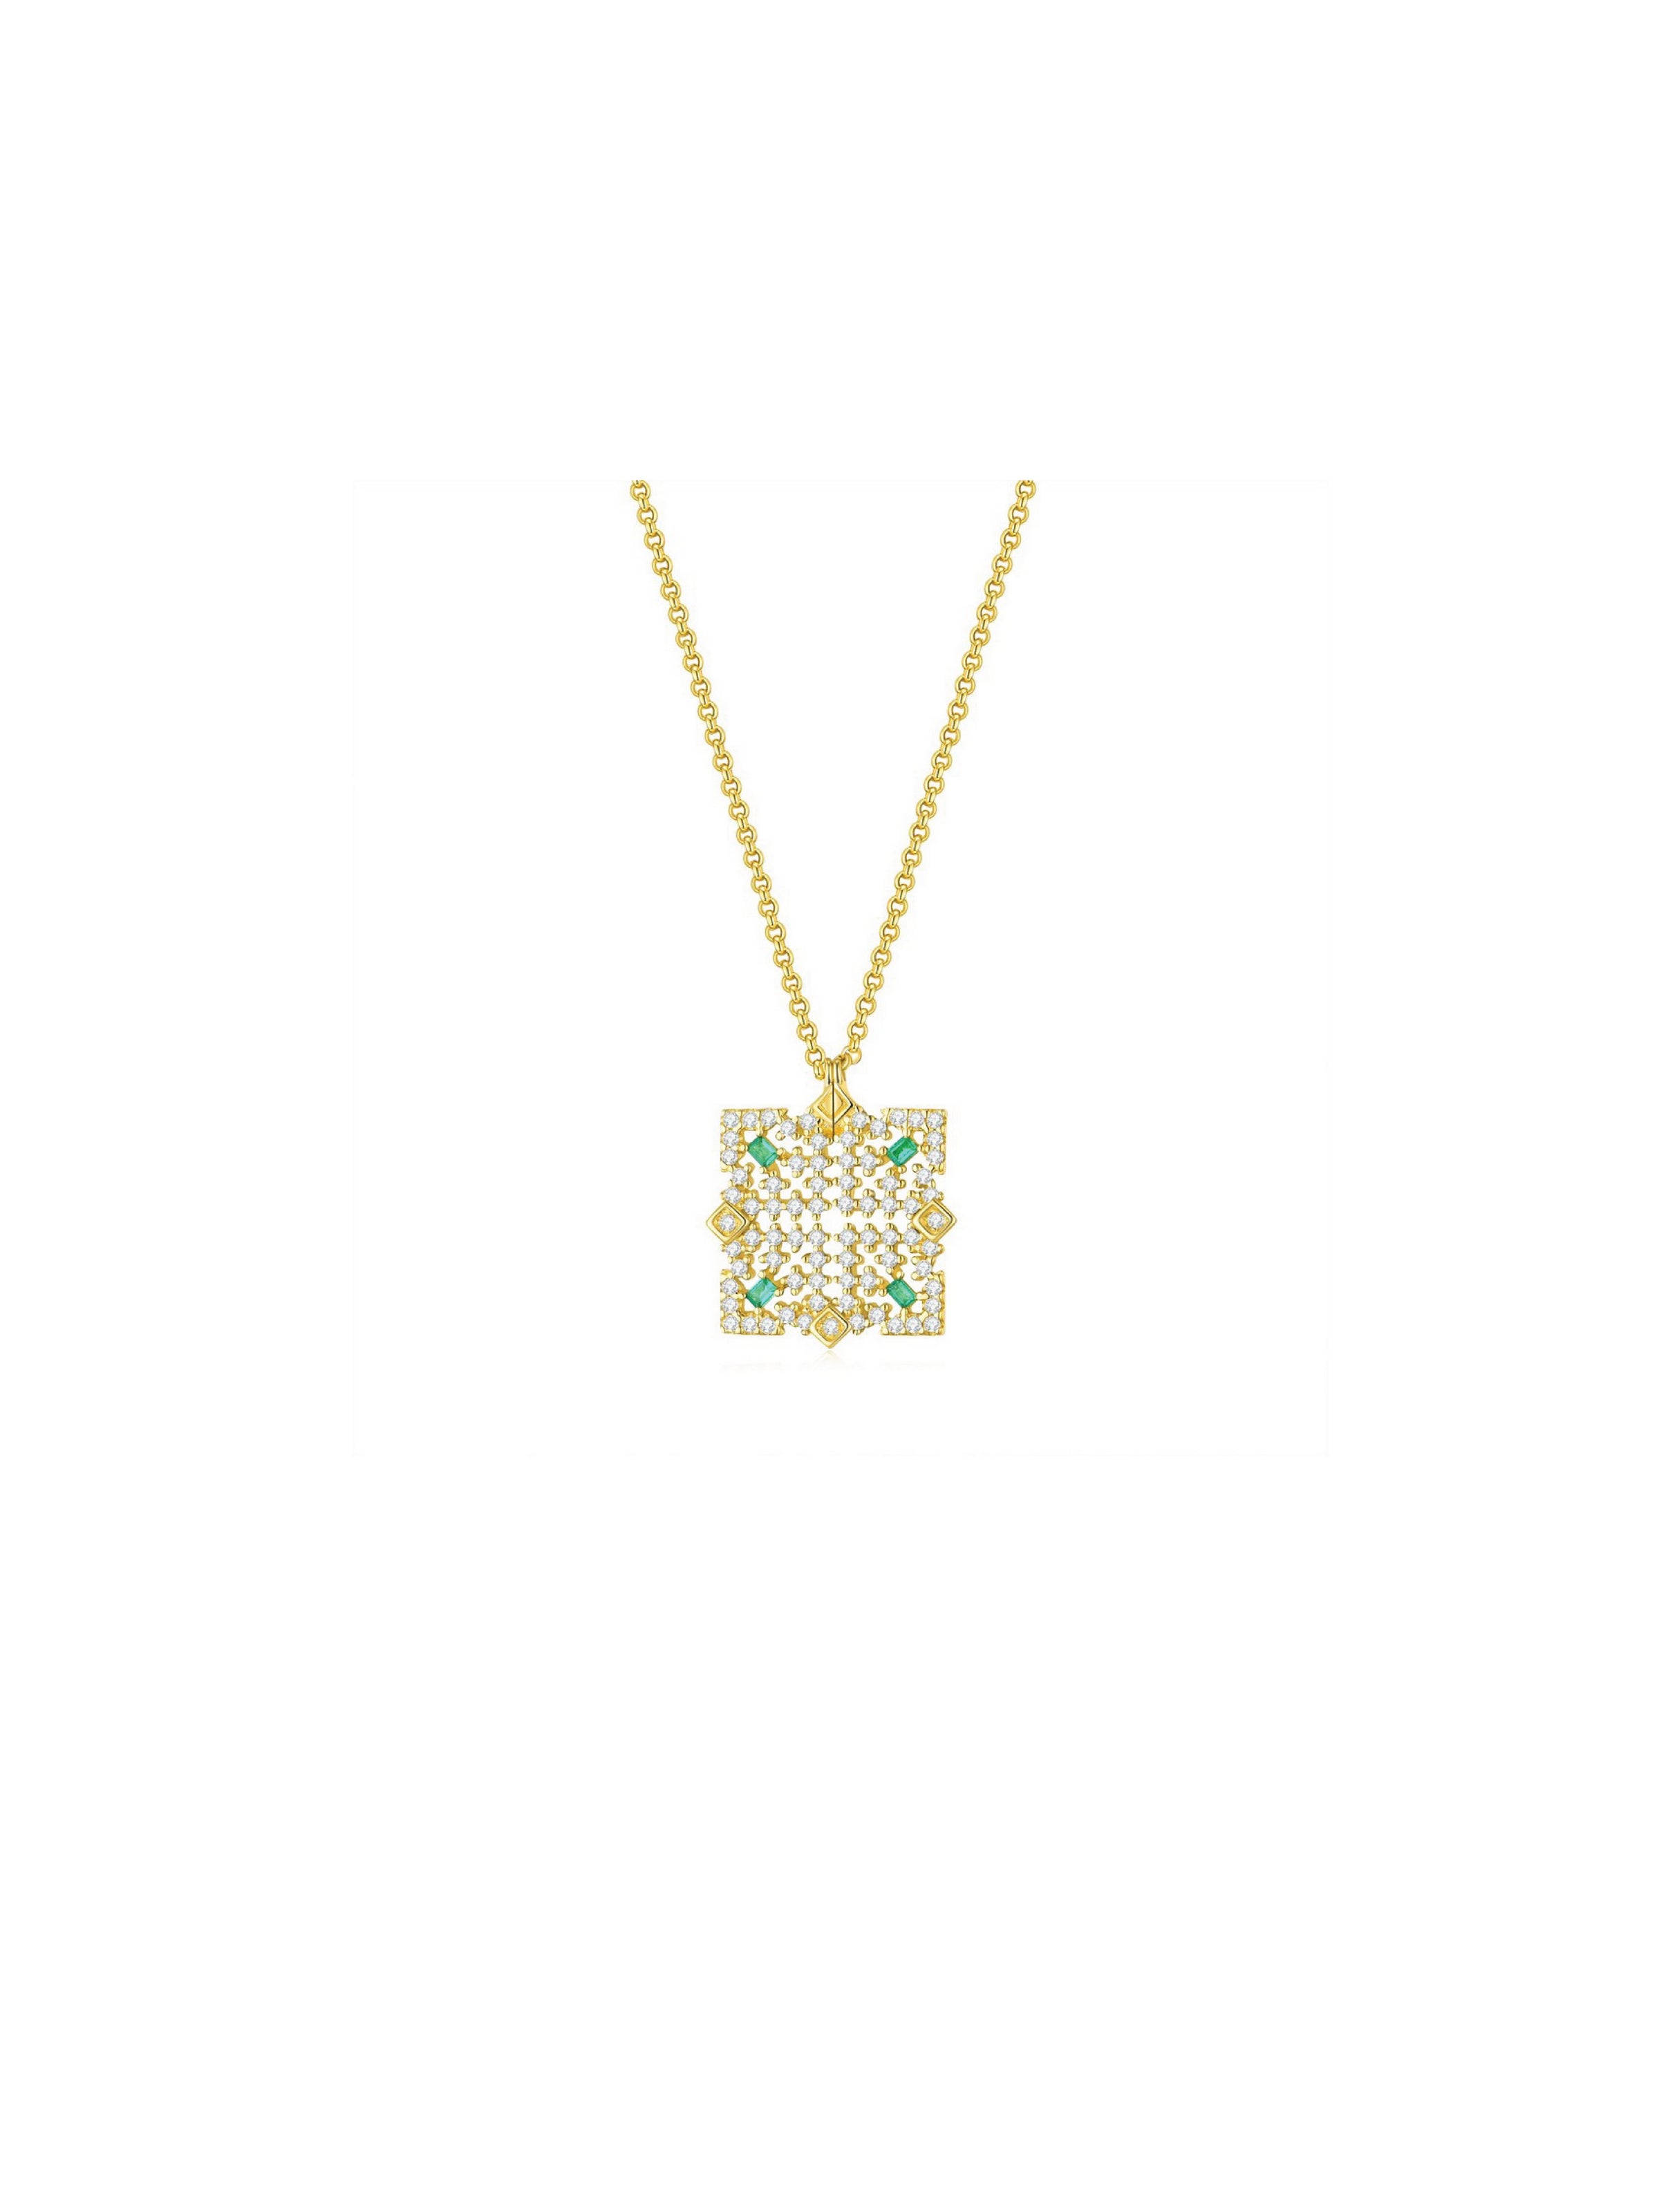 Emerald Palace Necklace - Orange Cube